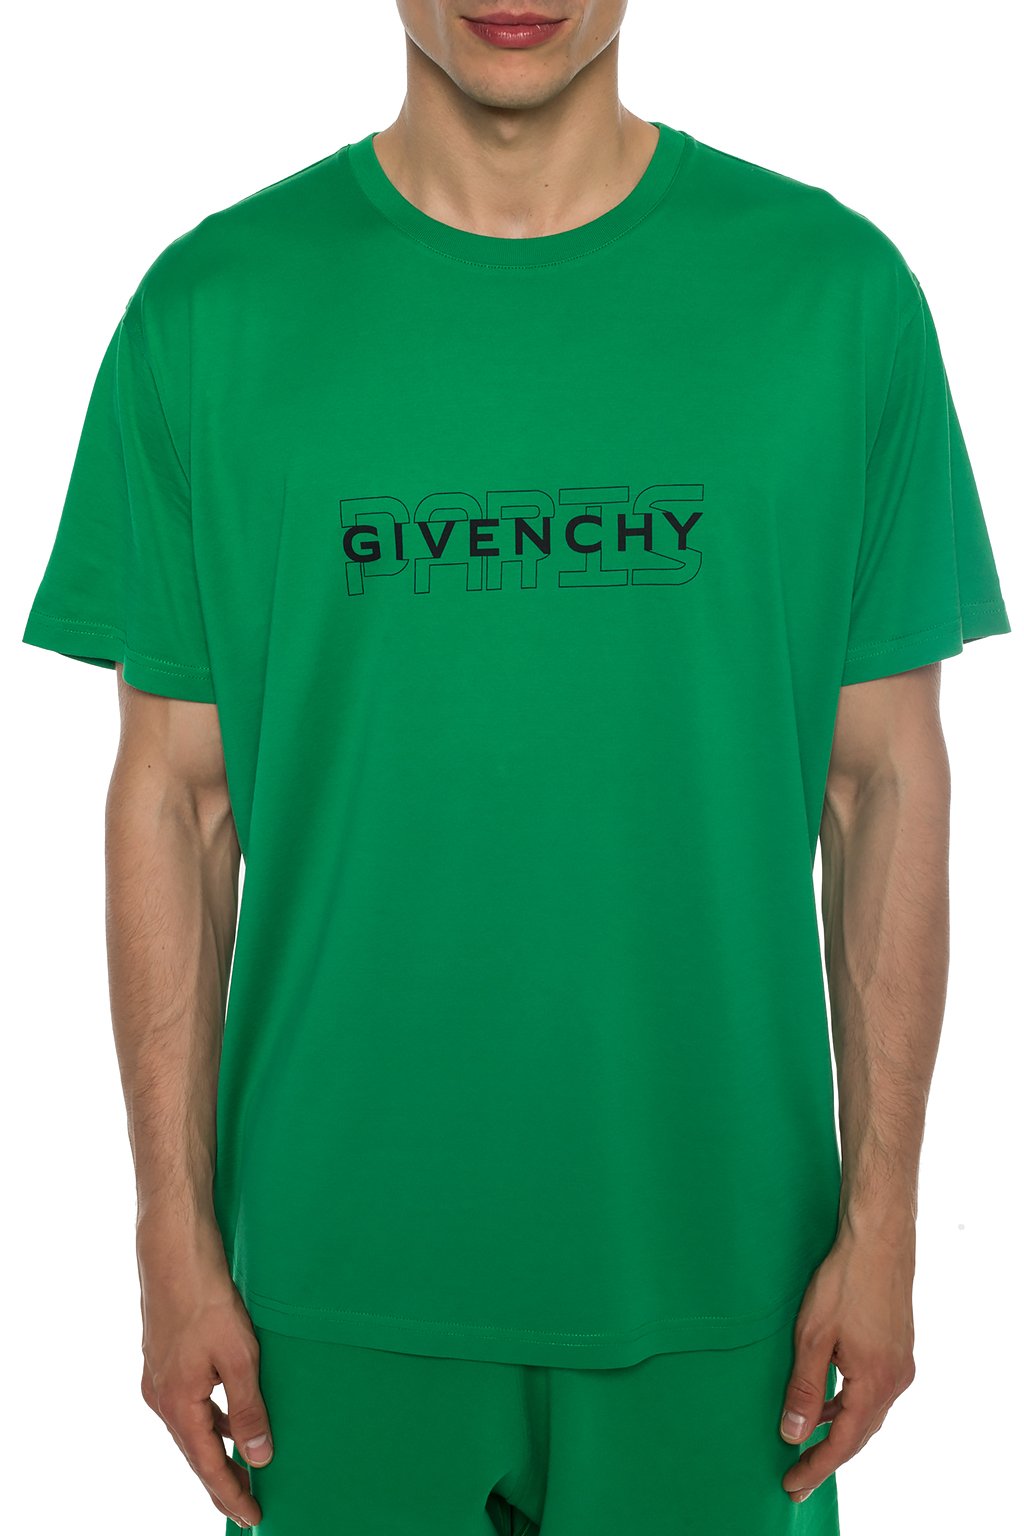 green givenchy t shirt